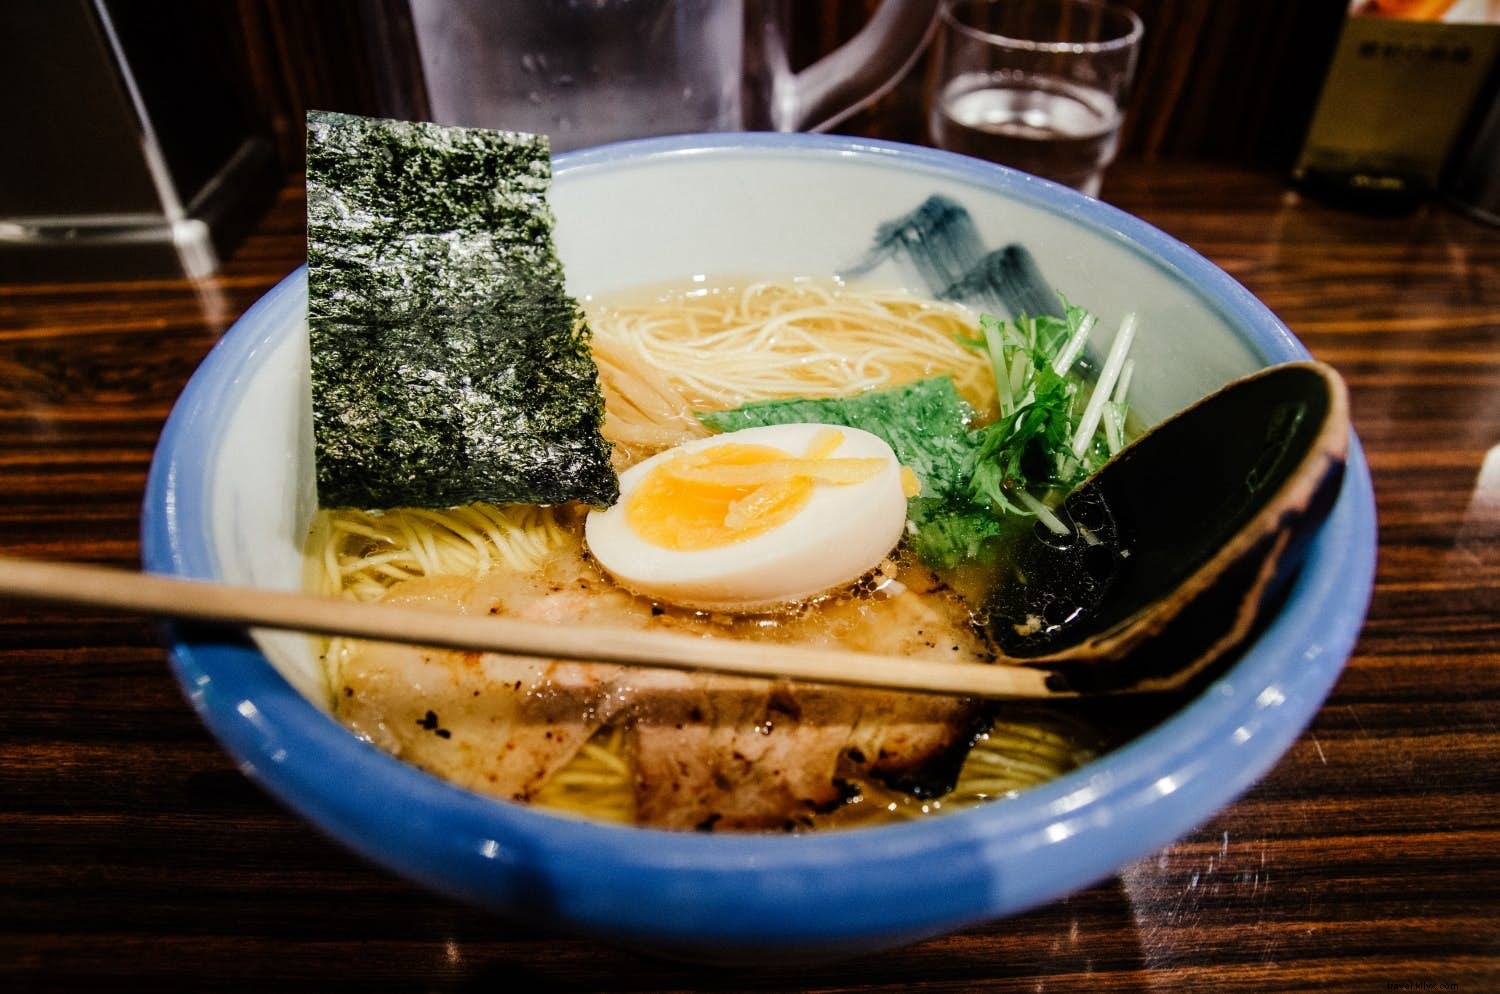 Manger en japonais :un guide des restaurants du Japon 